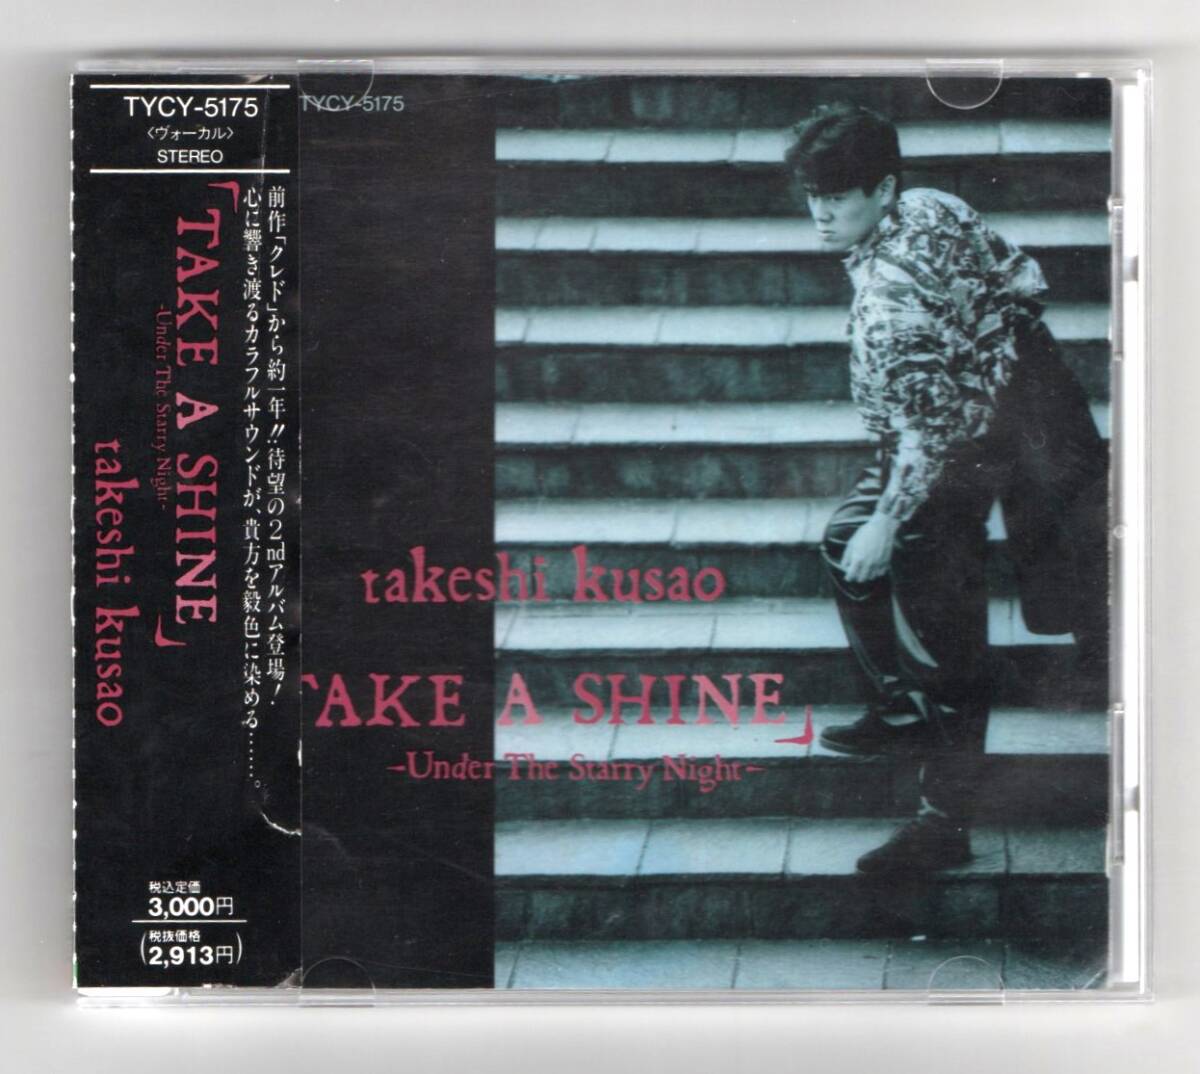 Σ 声優 草尾毅 2nd アルバム 10曲入 1991年 CD/テイク・ア・シャイン～アンダー・ザ・スタリィ・ナイト _※プラケースは交換済みです。